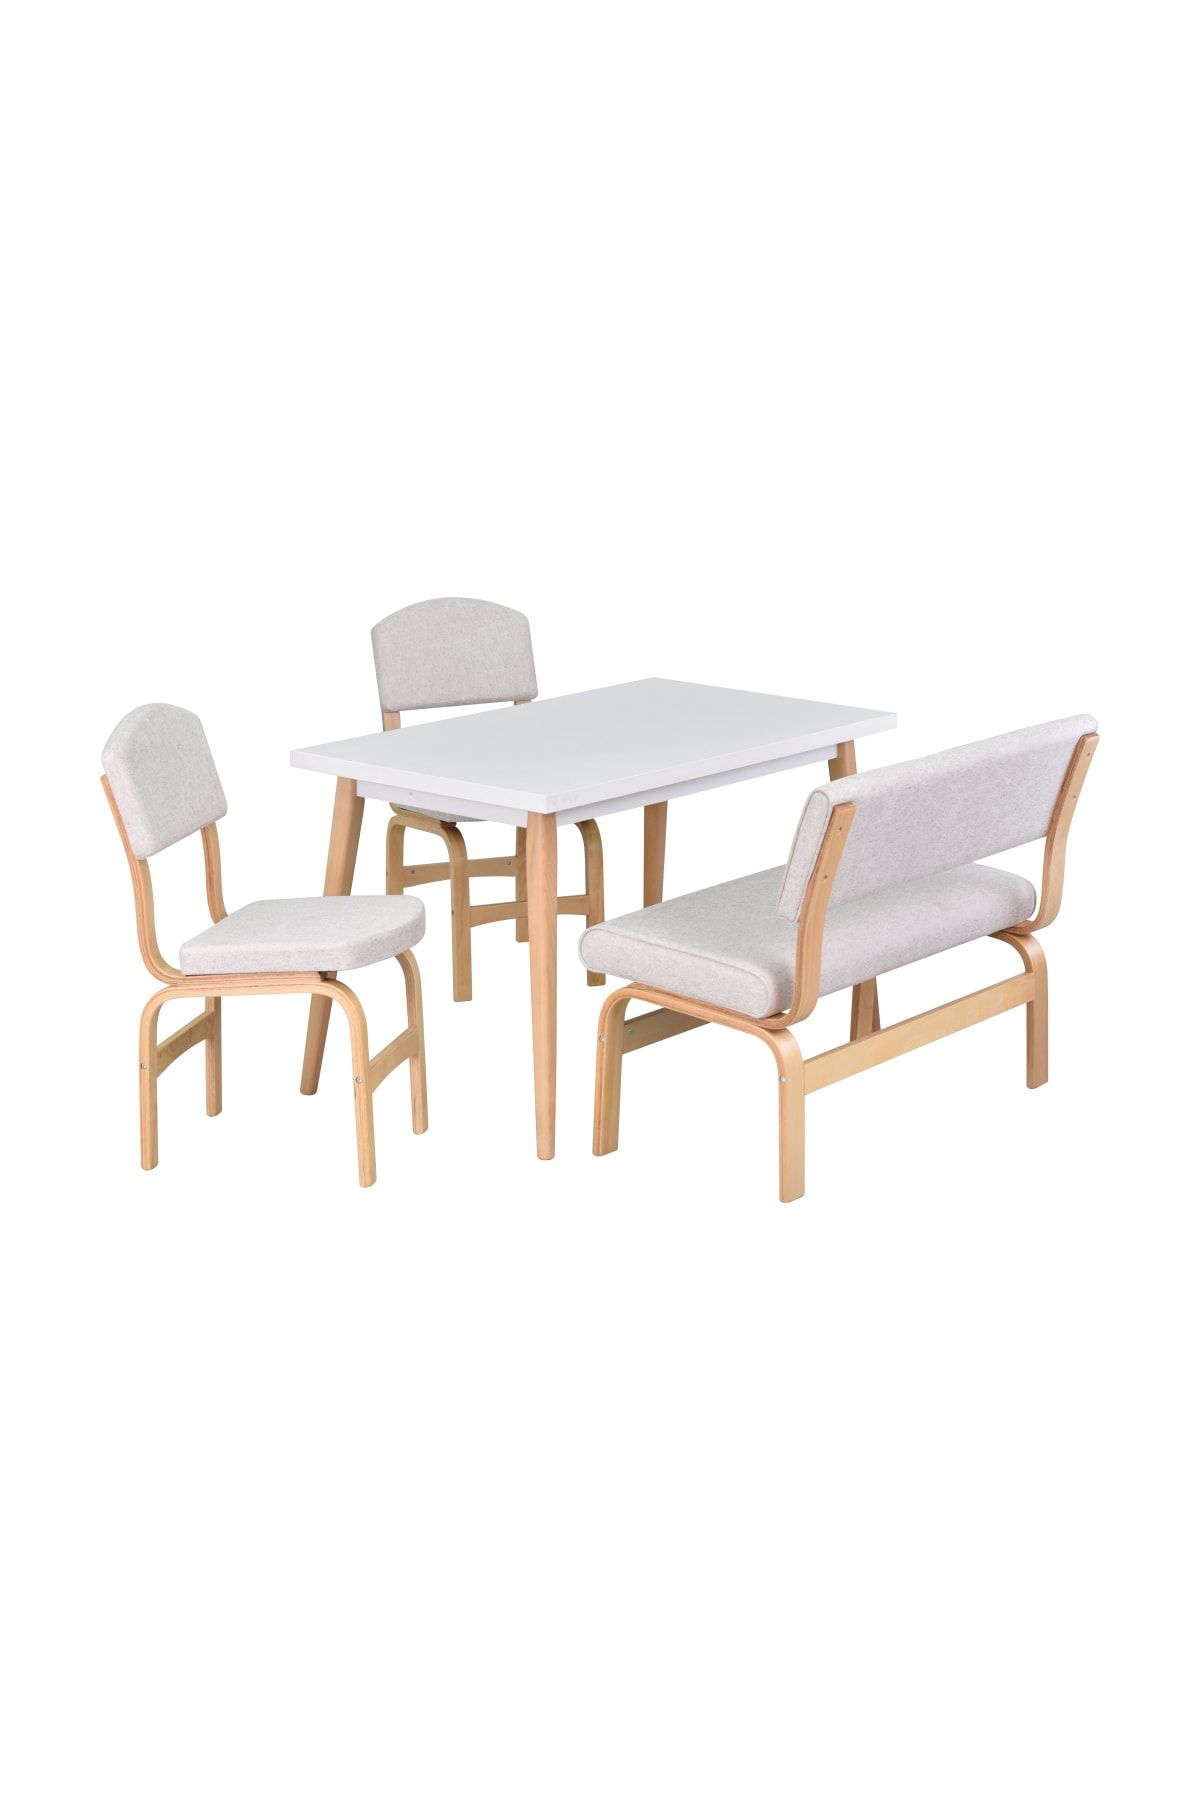 VİLİNZE Ege Sandalye Ve Bank Avanos Ahşap Mdf Mutfak Masası Takımı - 70x120 Cm